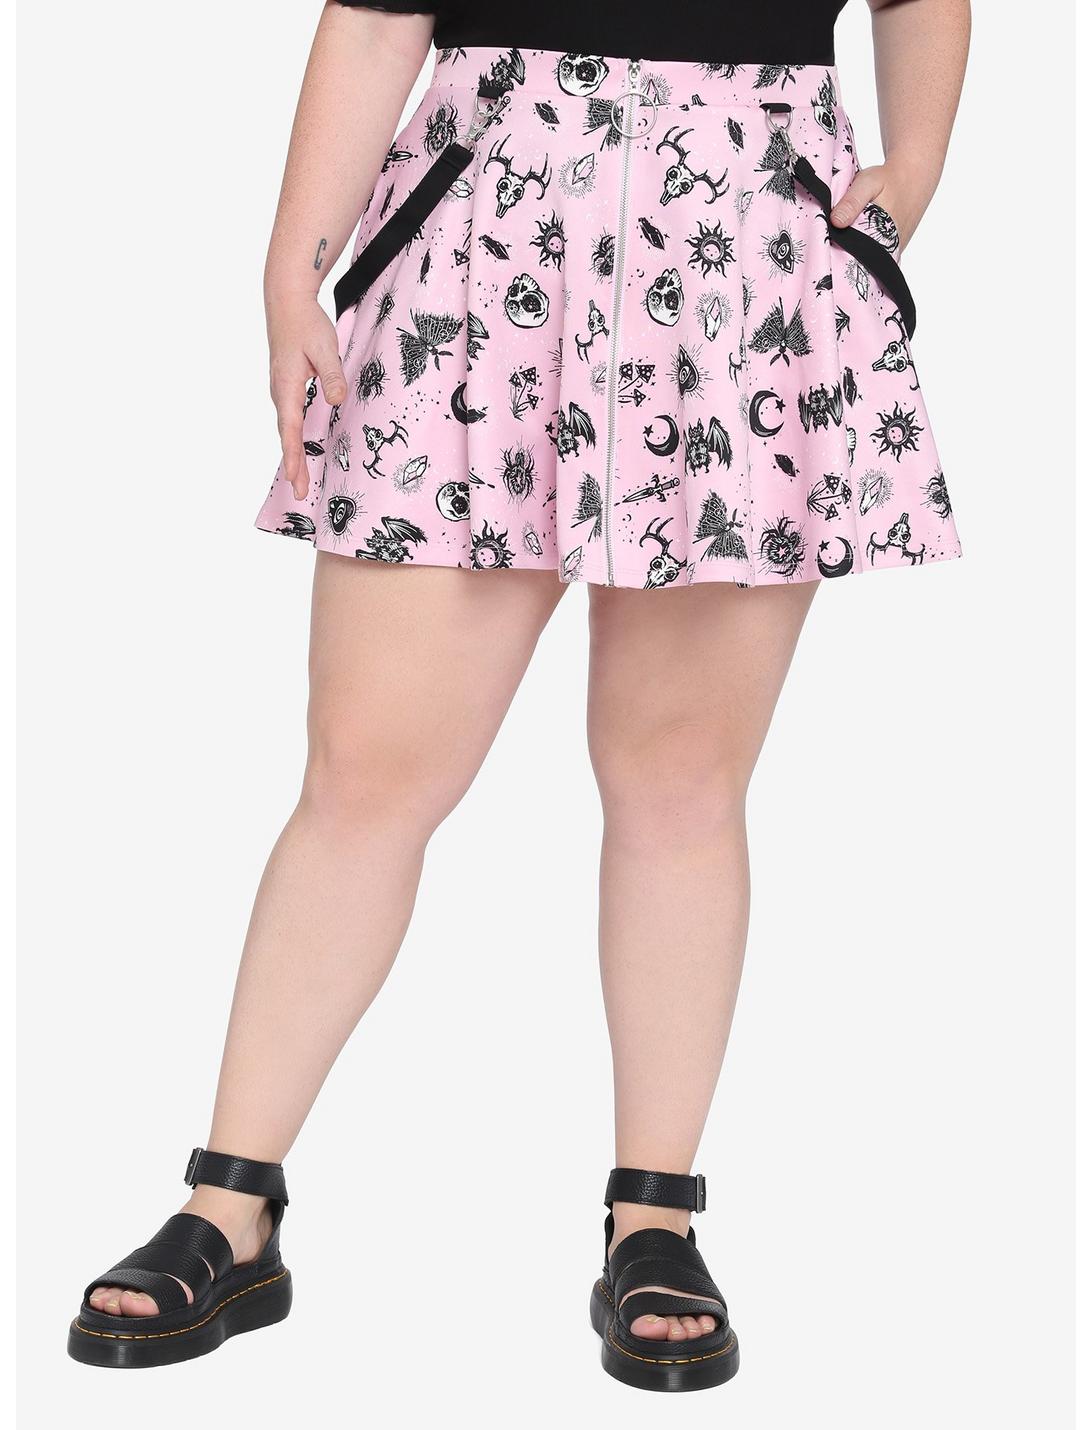 Pink Doodles Suspender Skirt Plus Size, PINK, hi-res